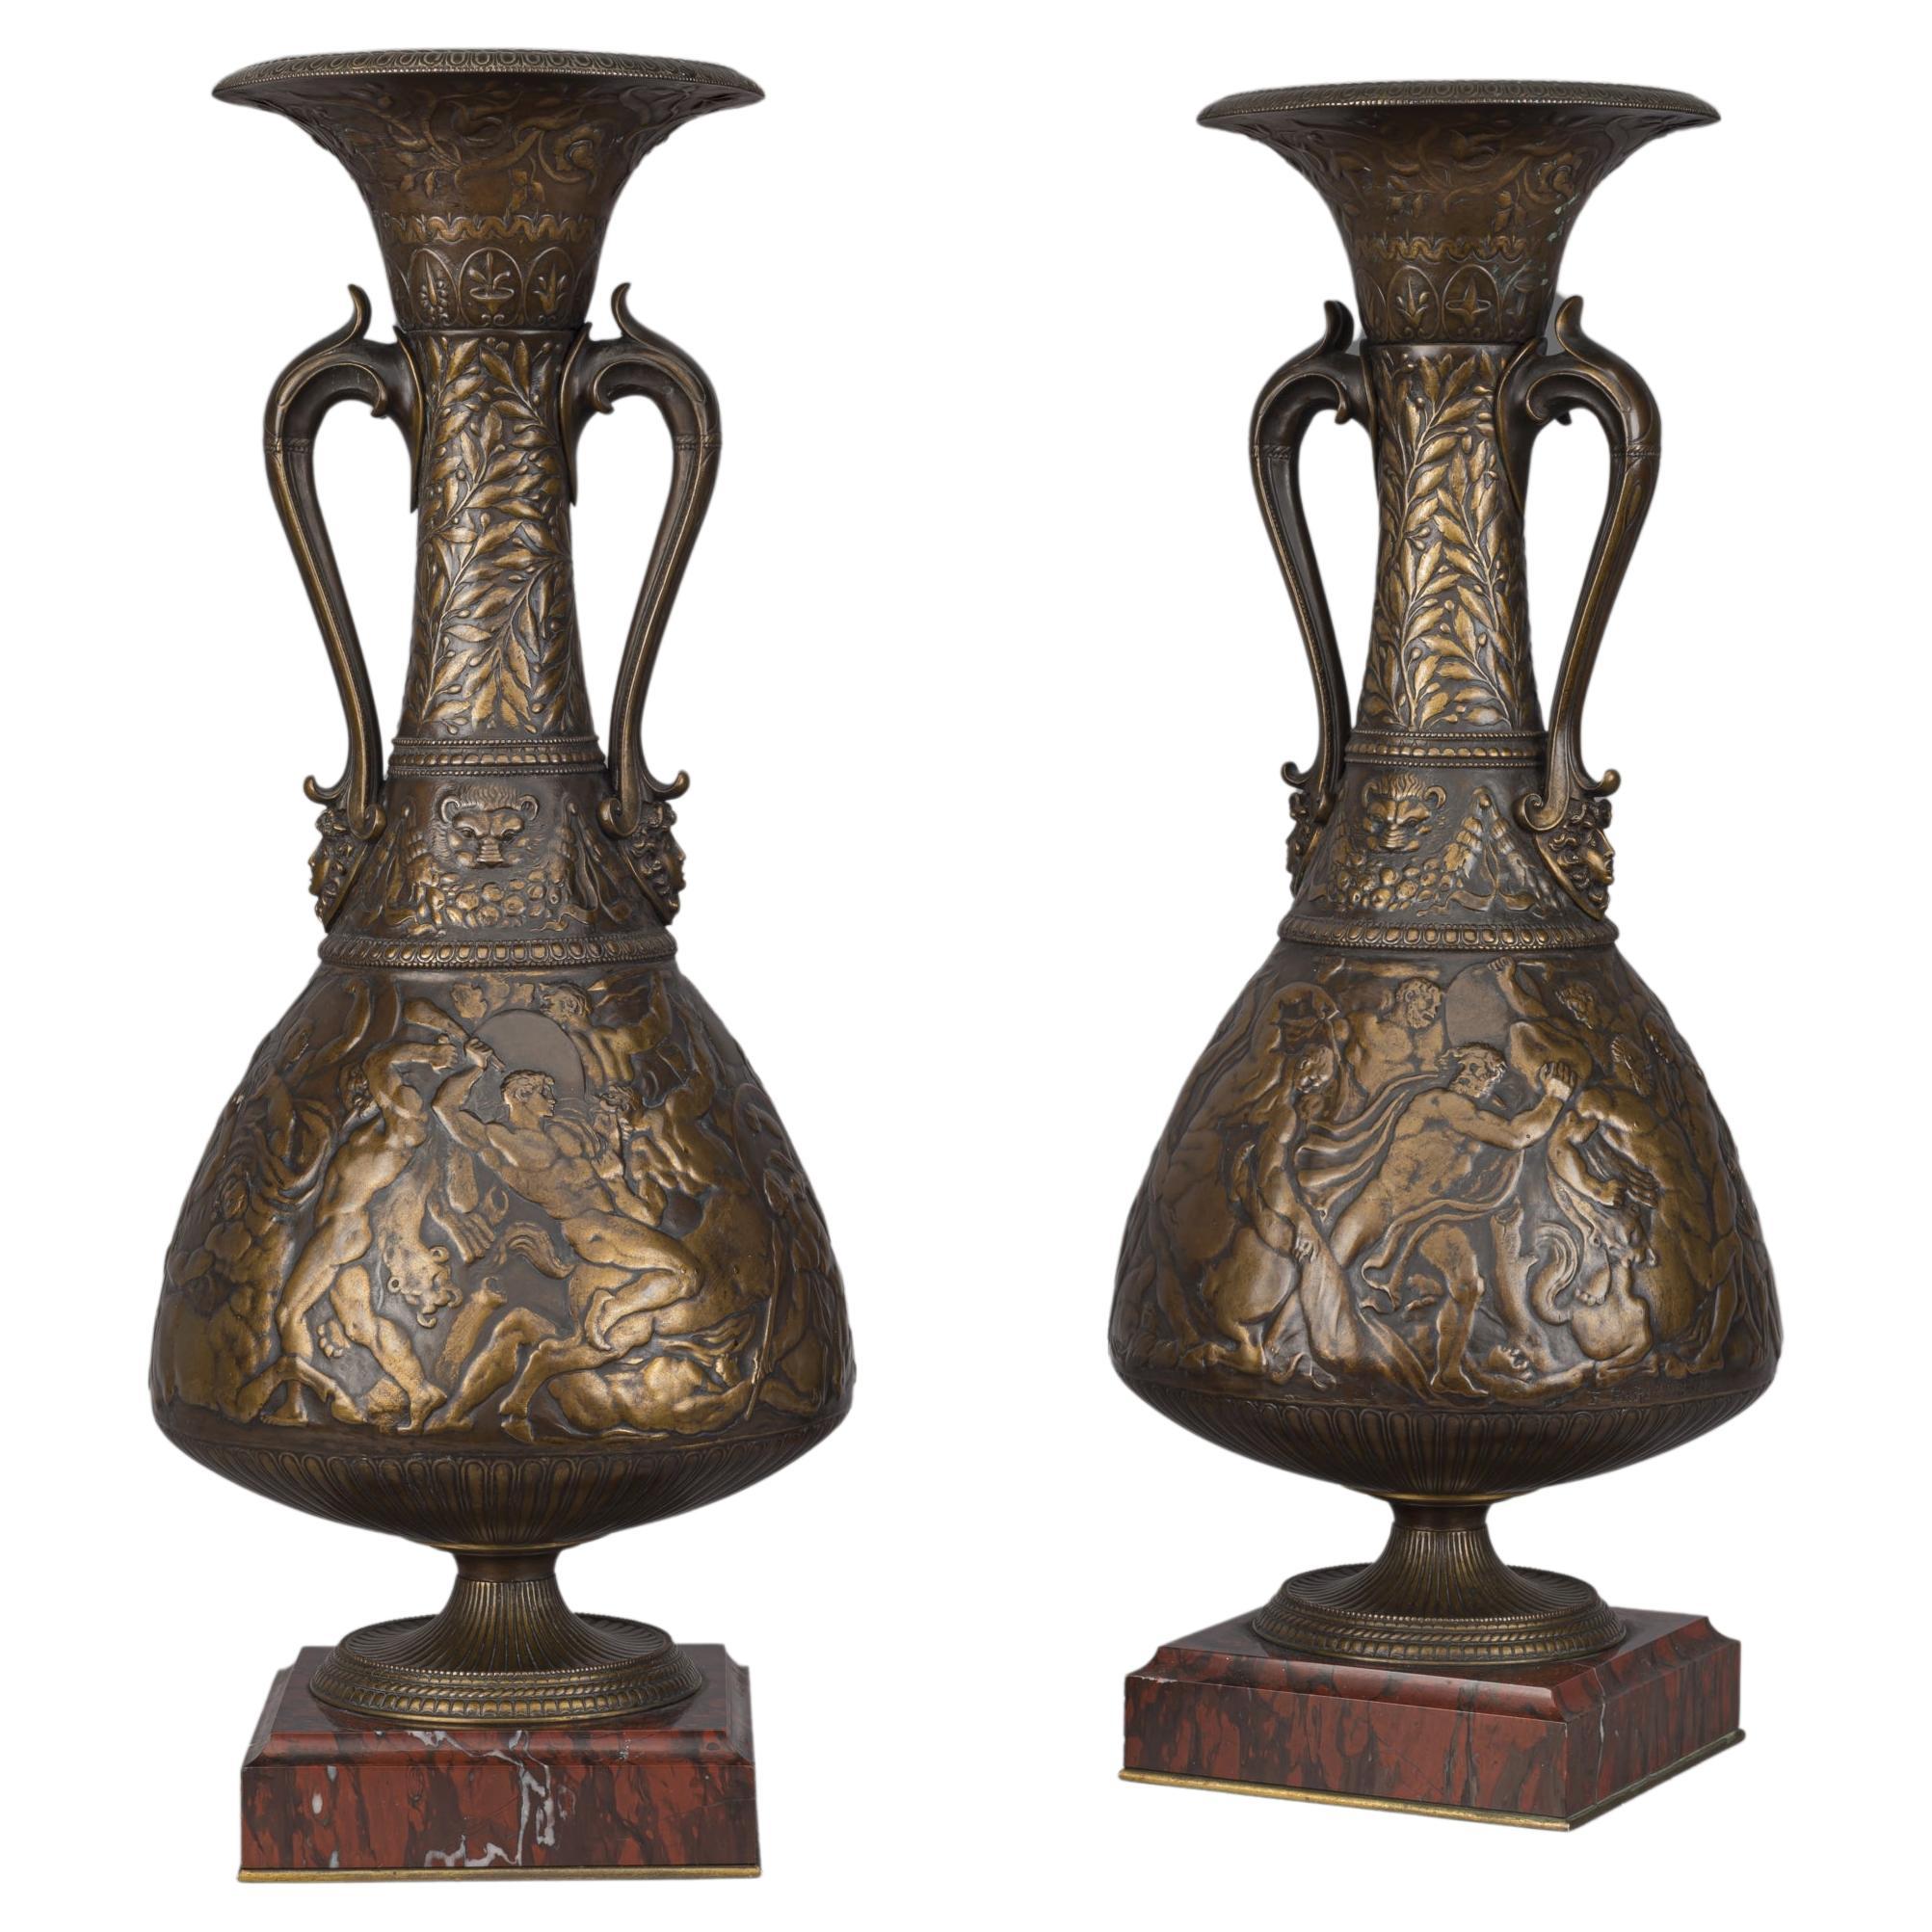 Paar 'Neo-Grec' Stil Multipatinierte Bronze Amphora Vasen 